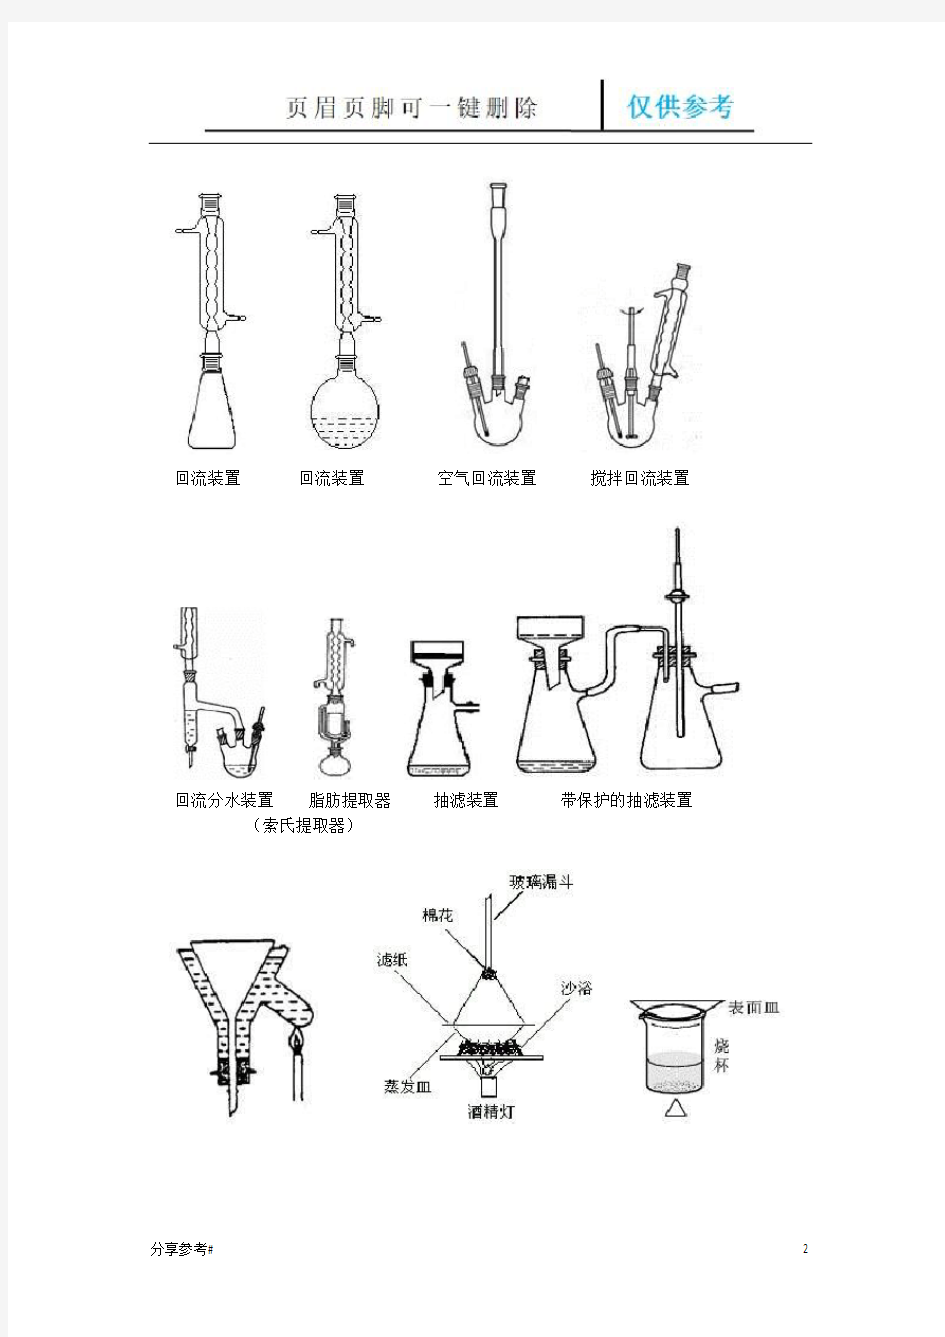 有机化学实验中常见仪器装置图(学习类别)